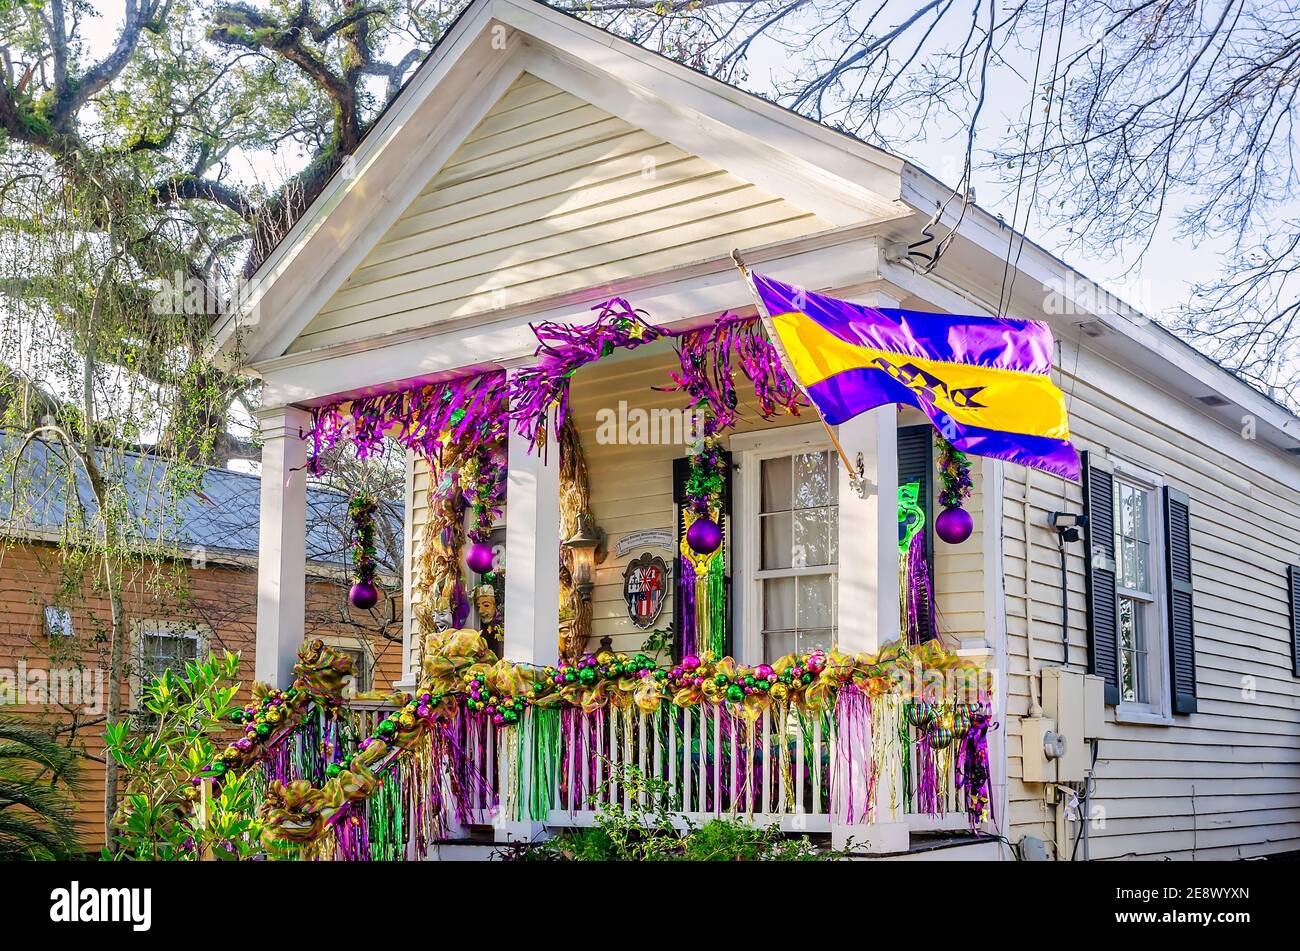 Ein Haus ist für Mardi Gras, 31. Januar 2021, in Mobile, Alabama dekoriert. Paraden werden wegen COVID-19 abgesagt, was die neue Yardi Gras Tradition auslöste. Stockfoto